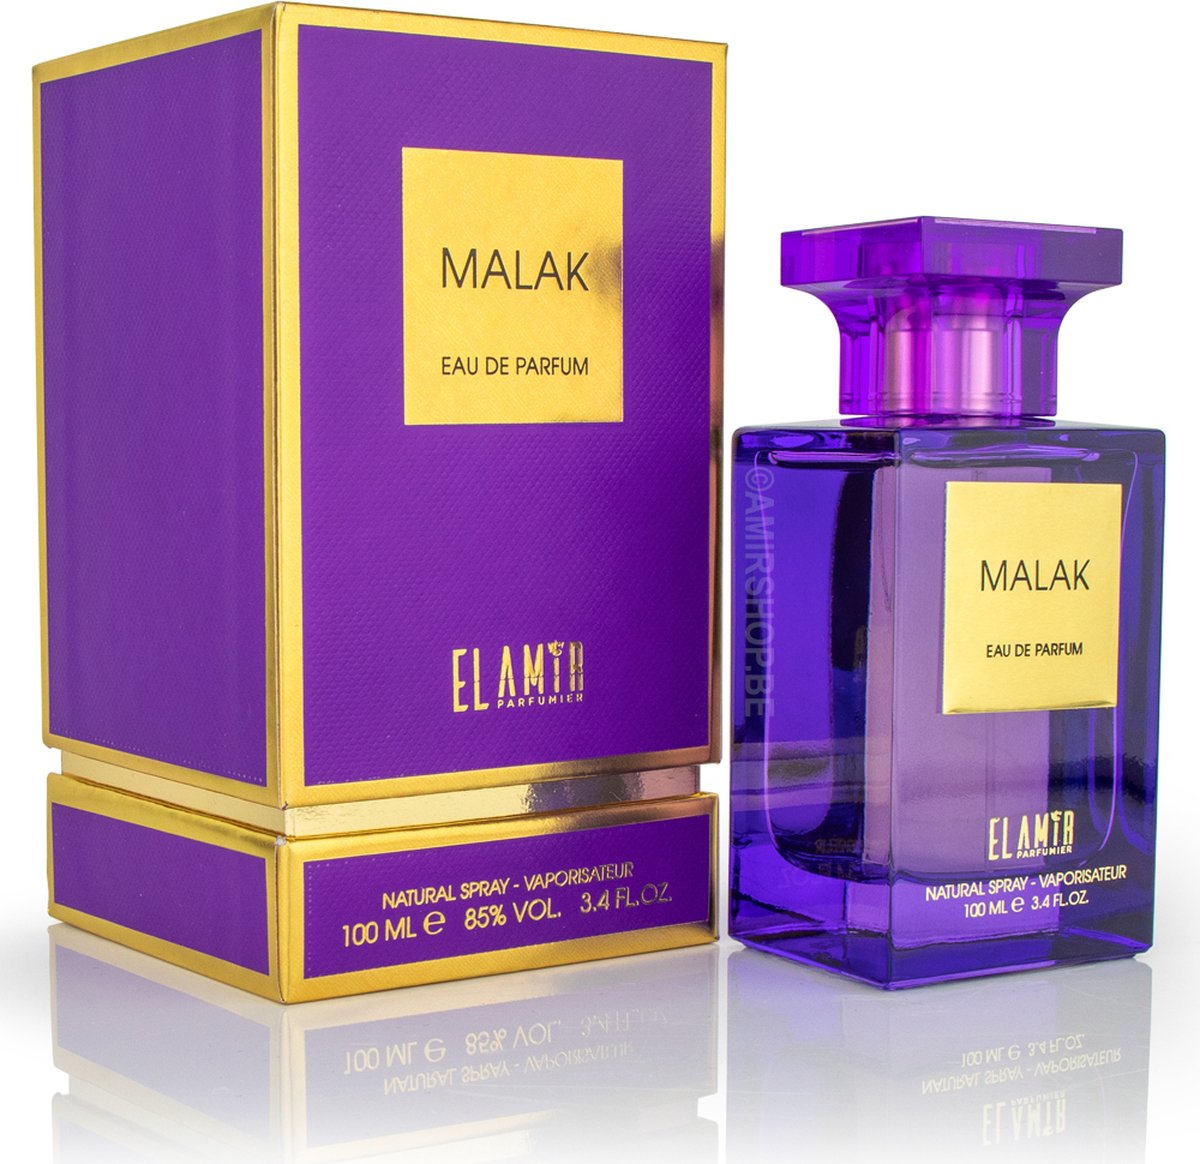 Eau de parfum el amir - Malak - 100 ML - EL AMIR Parfumier - Parfum oriental pour femme